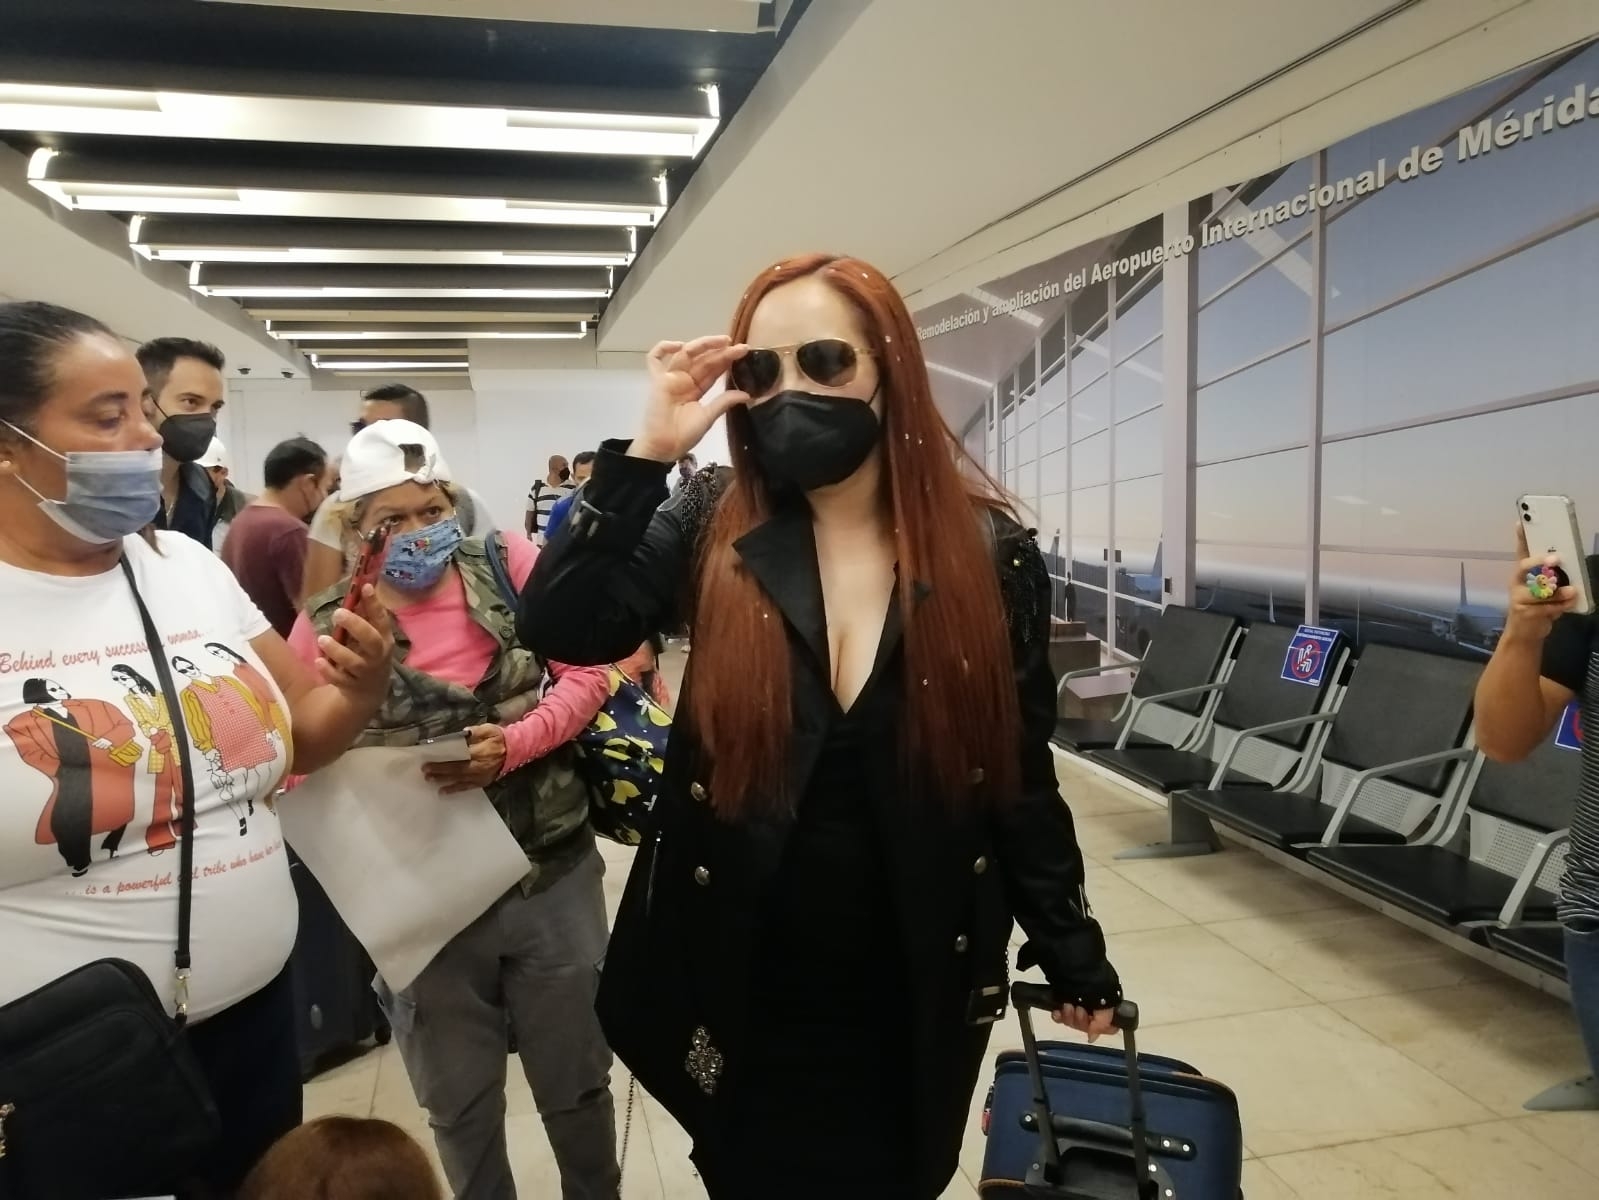 La Academia: Miriam llega al aeropuerto de Mérida y es recibida por sus fans